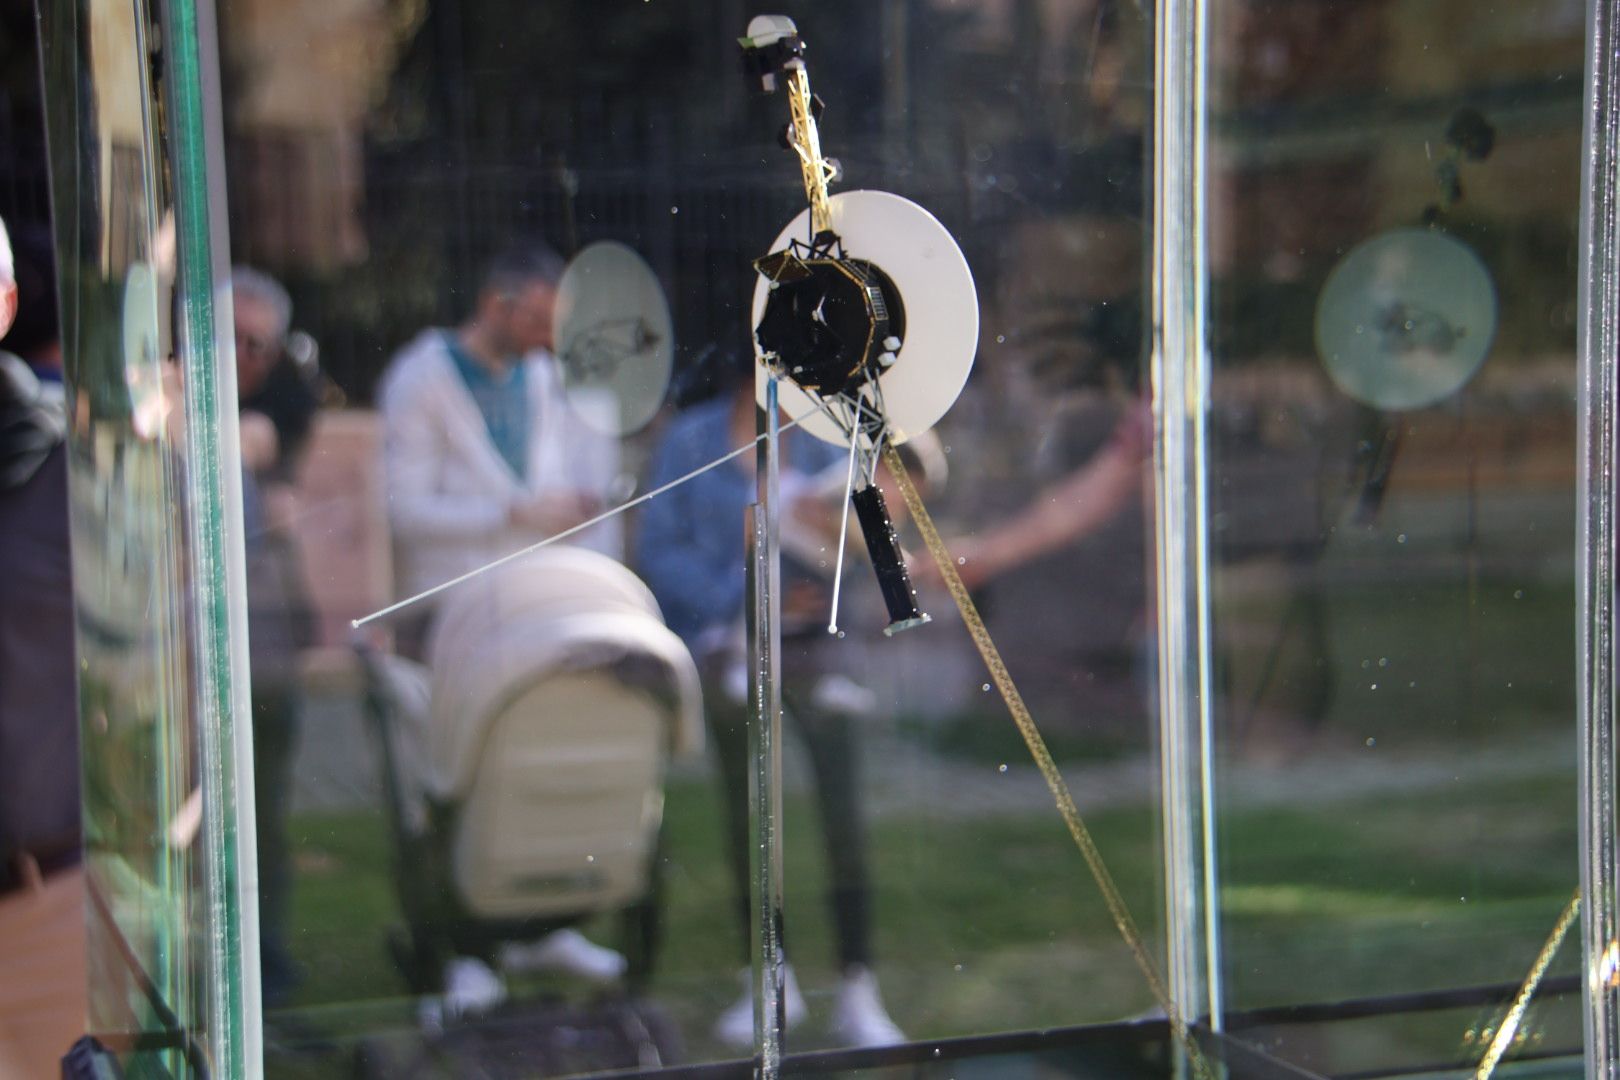 Inauguración de una maqueta de la sonda Voyager 1 que forma parte del Sistema Solar a escala de Ciudad Rodrigo, en colaboración con la Asociación Astróbiga